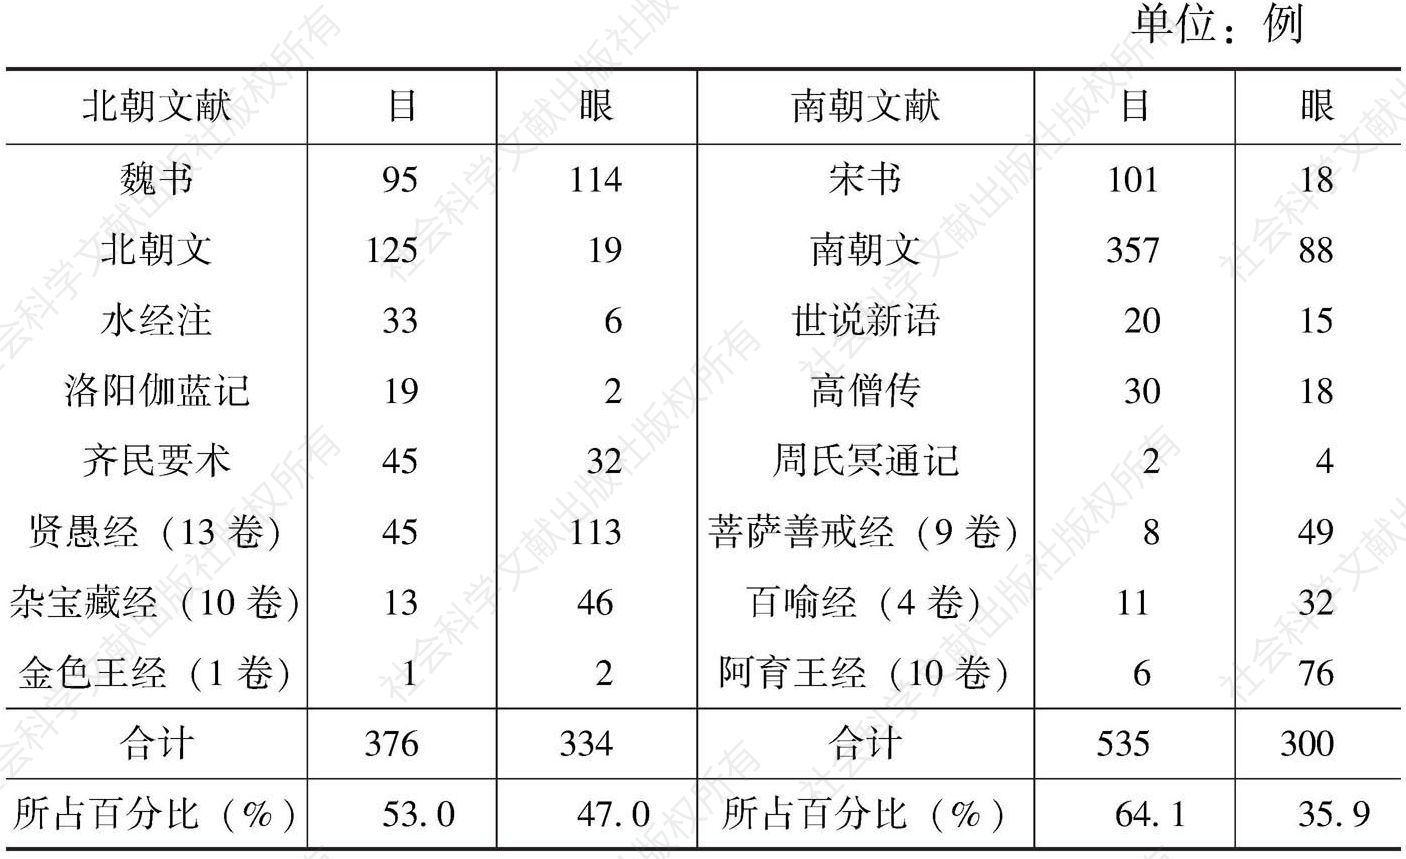 表6 南北朝文献中关于“目”“眼”的使用统计